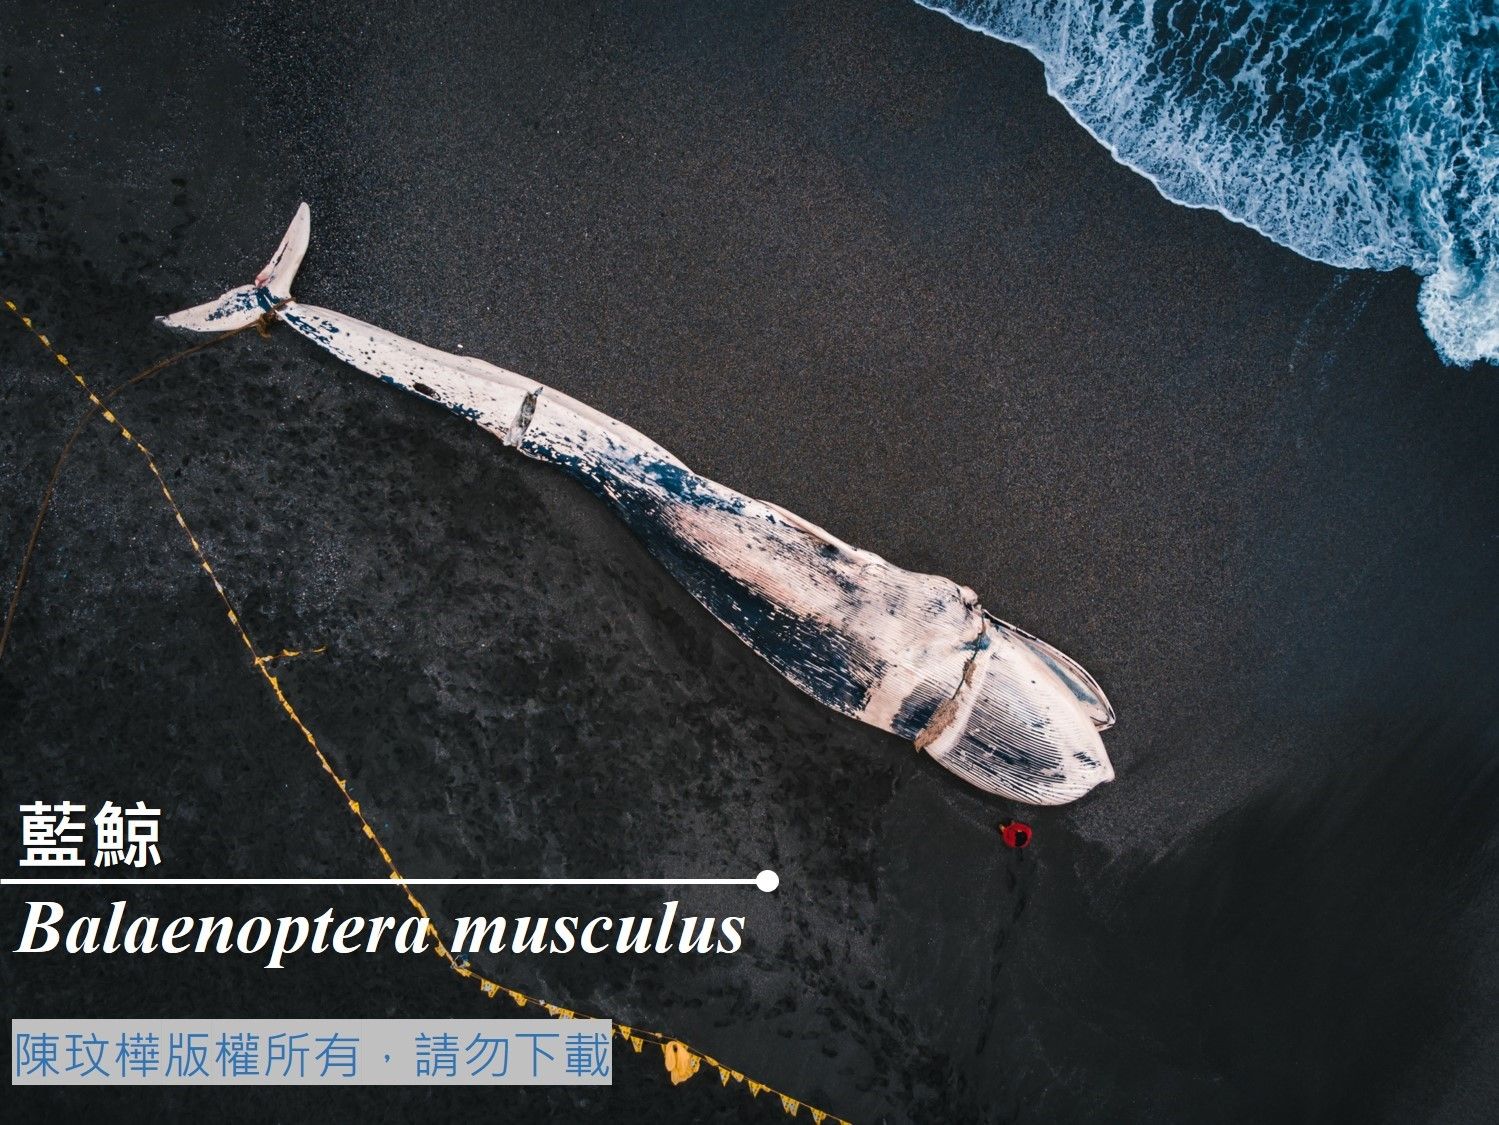 臺灣百種海洋動物圖鑑-藍鯨-臺灣百種海洋動物- 海洋委員會海洋保育署全球資訊網